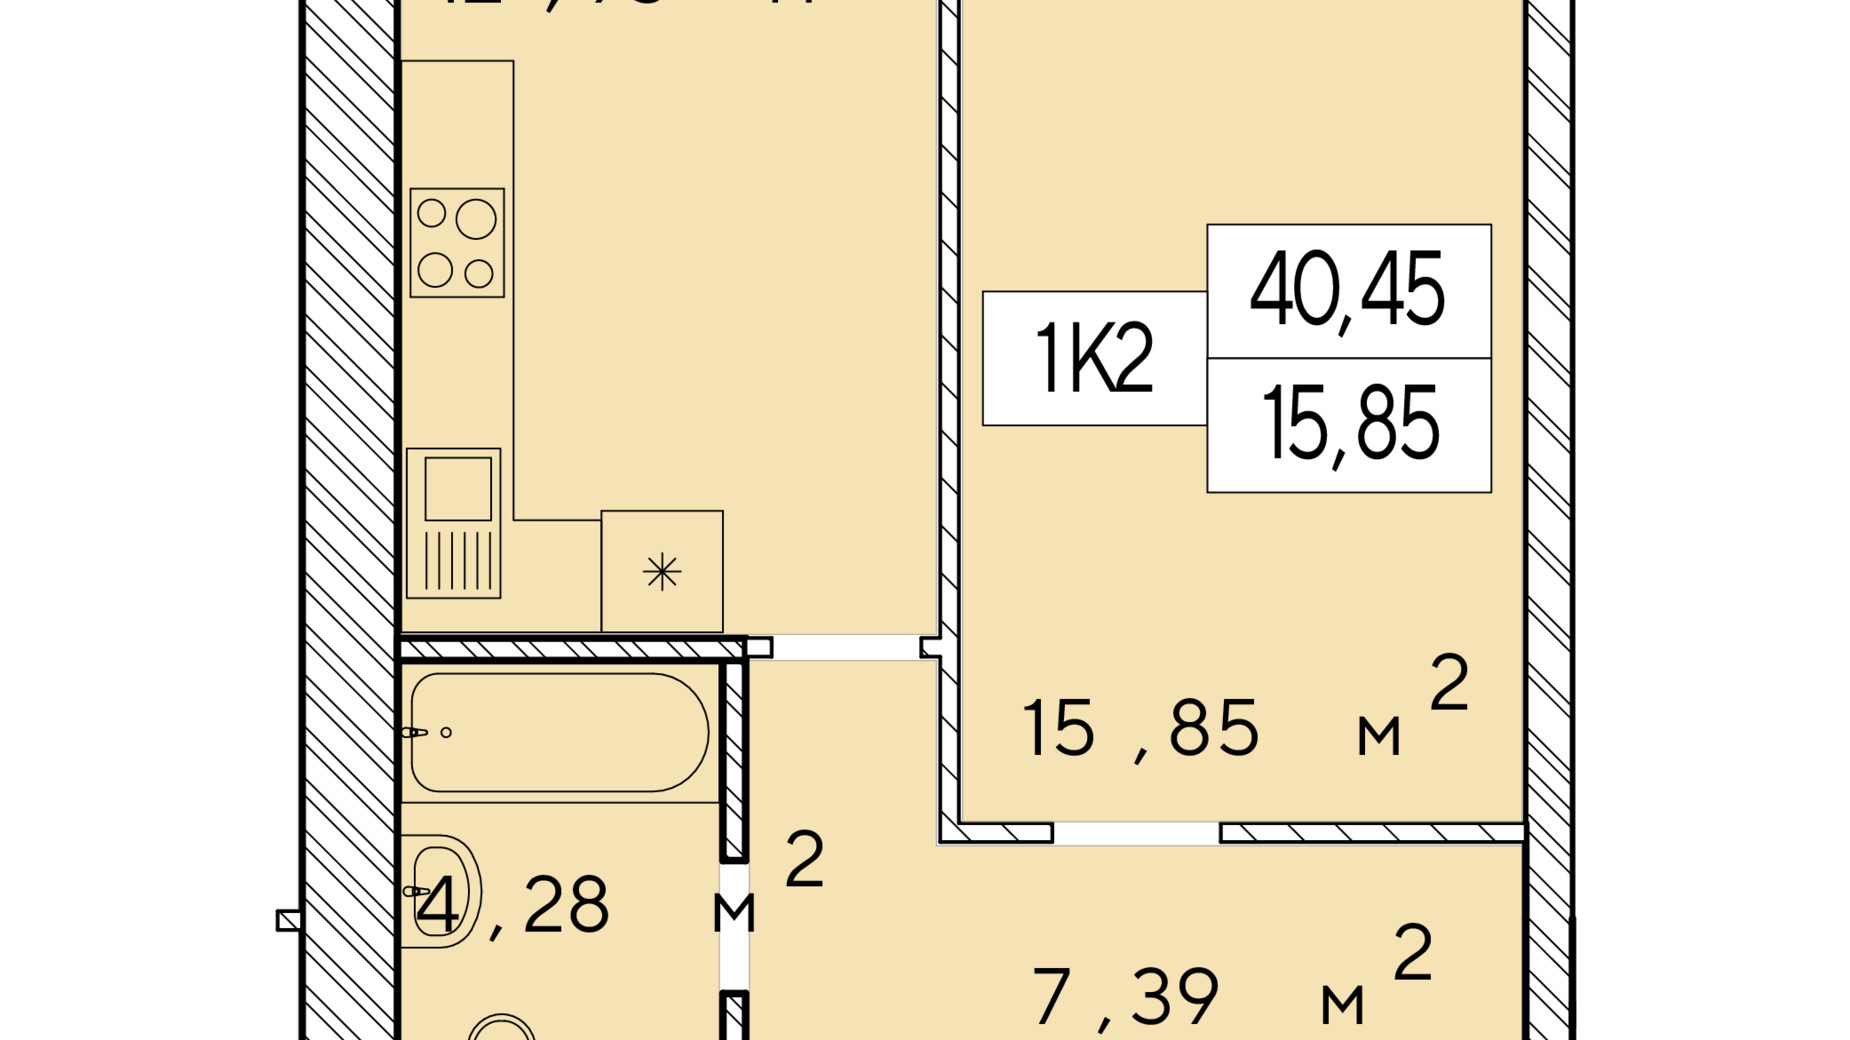 Планування 1-кімнатної квартири в ЖК Фаворит Premium 40.45 м², фото 548473